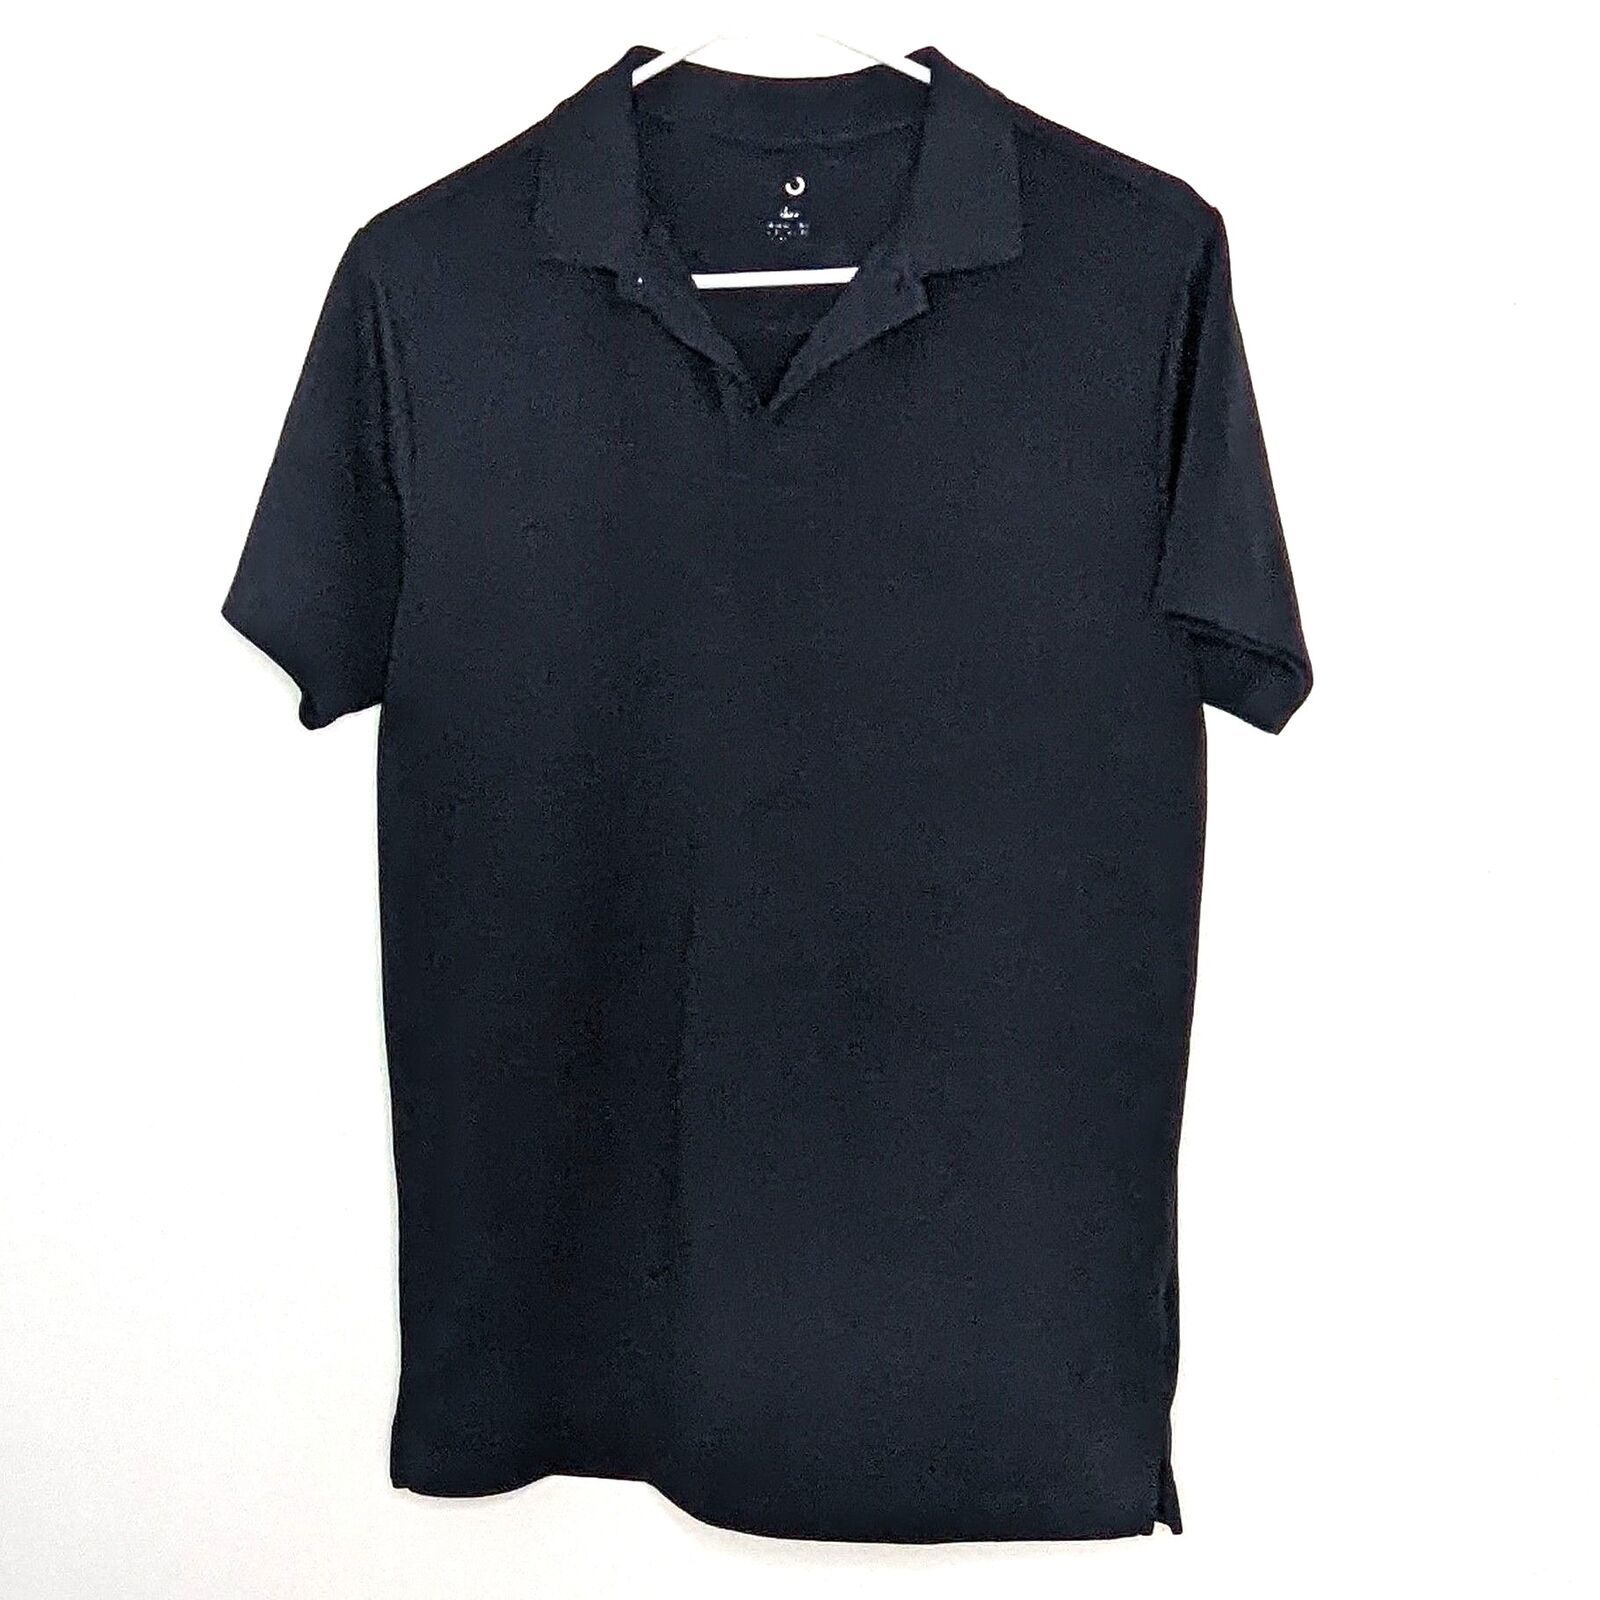 Boys Izod Shirt Uniform Polo Size XL (18/20) Navy Blue Short Sleeve Sports Pe... - £5.44 GBP